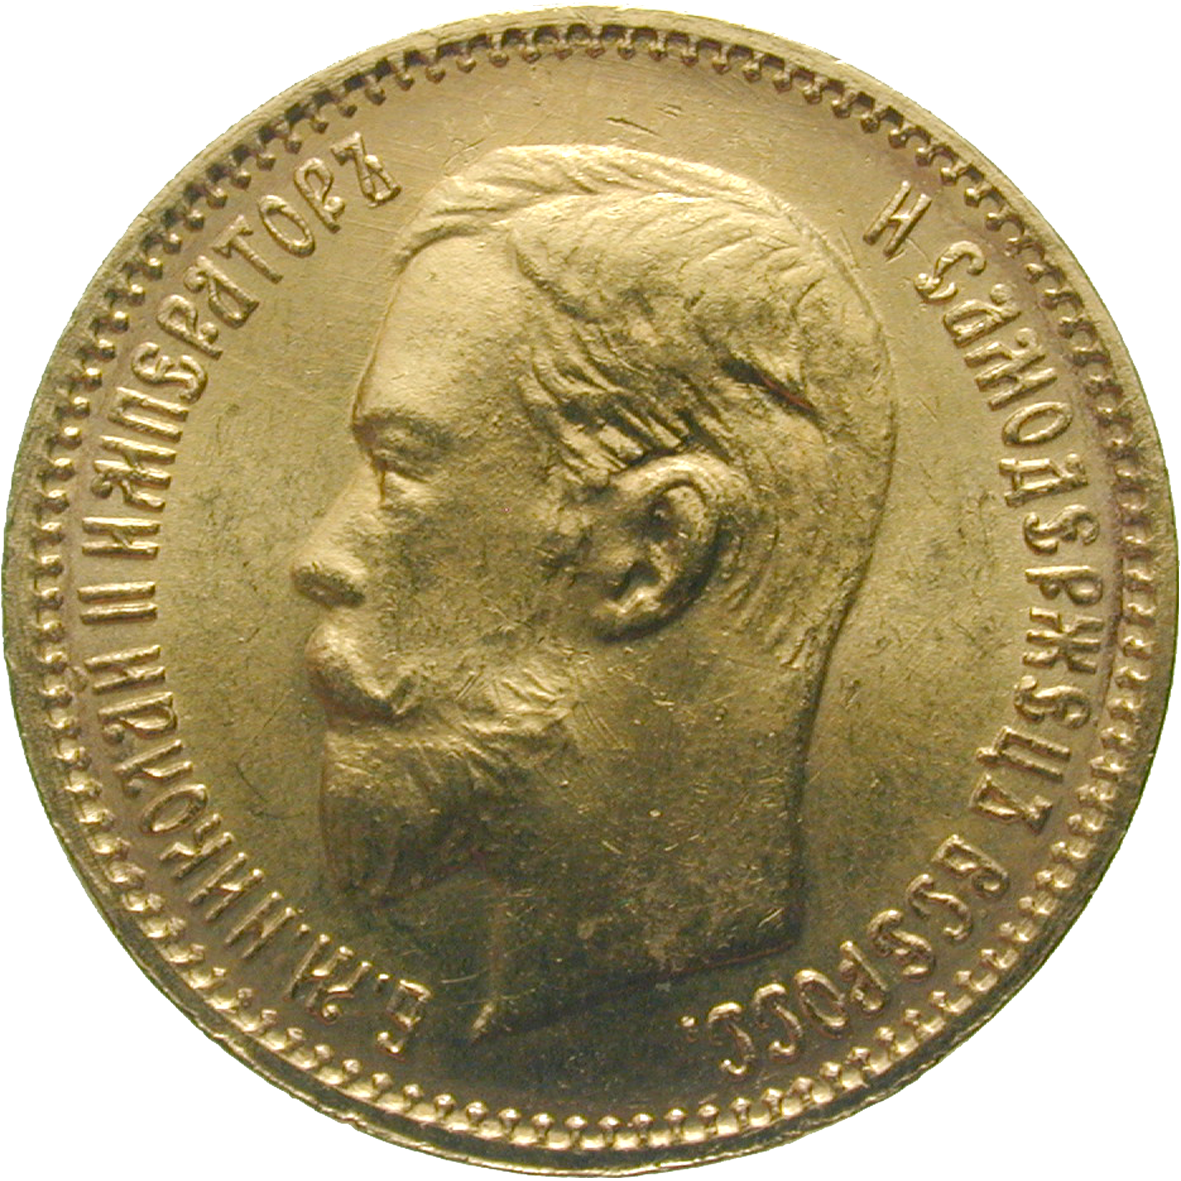 Zarenreich Russland, Nikolaus II., 5 Rubel 1903 (obverse)